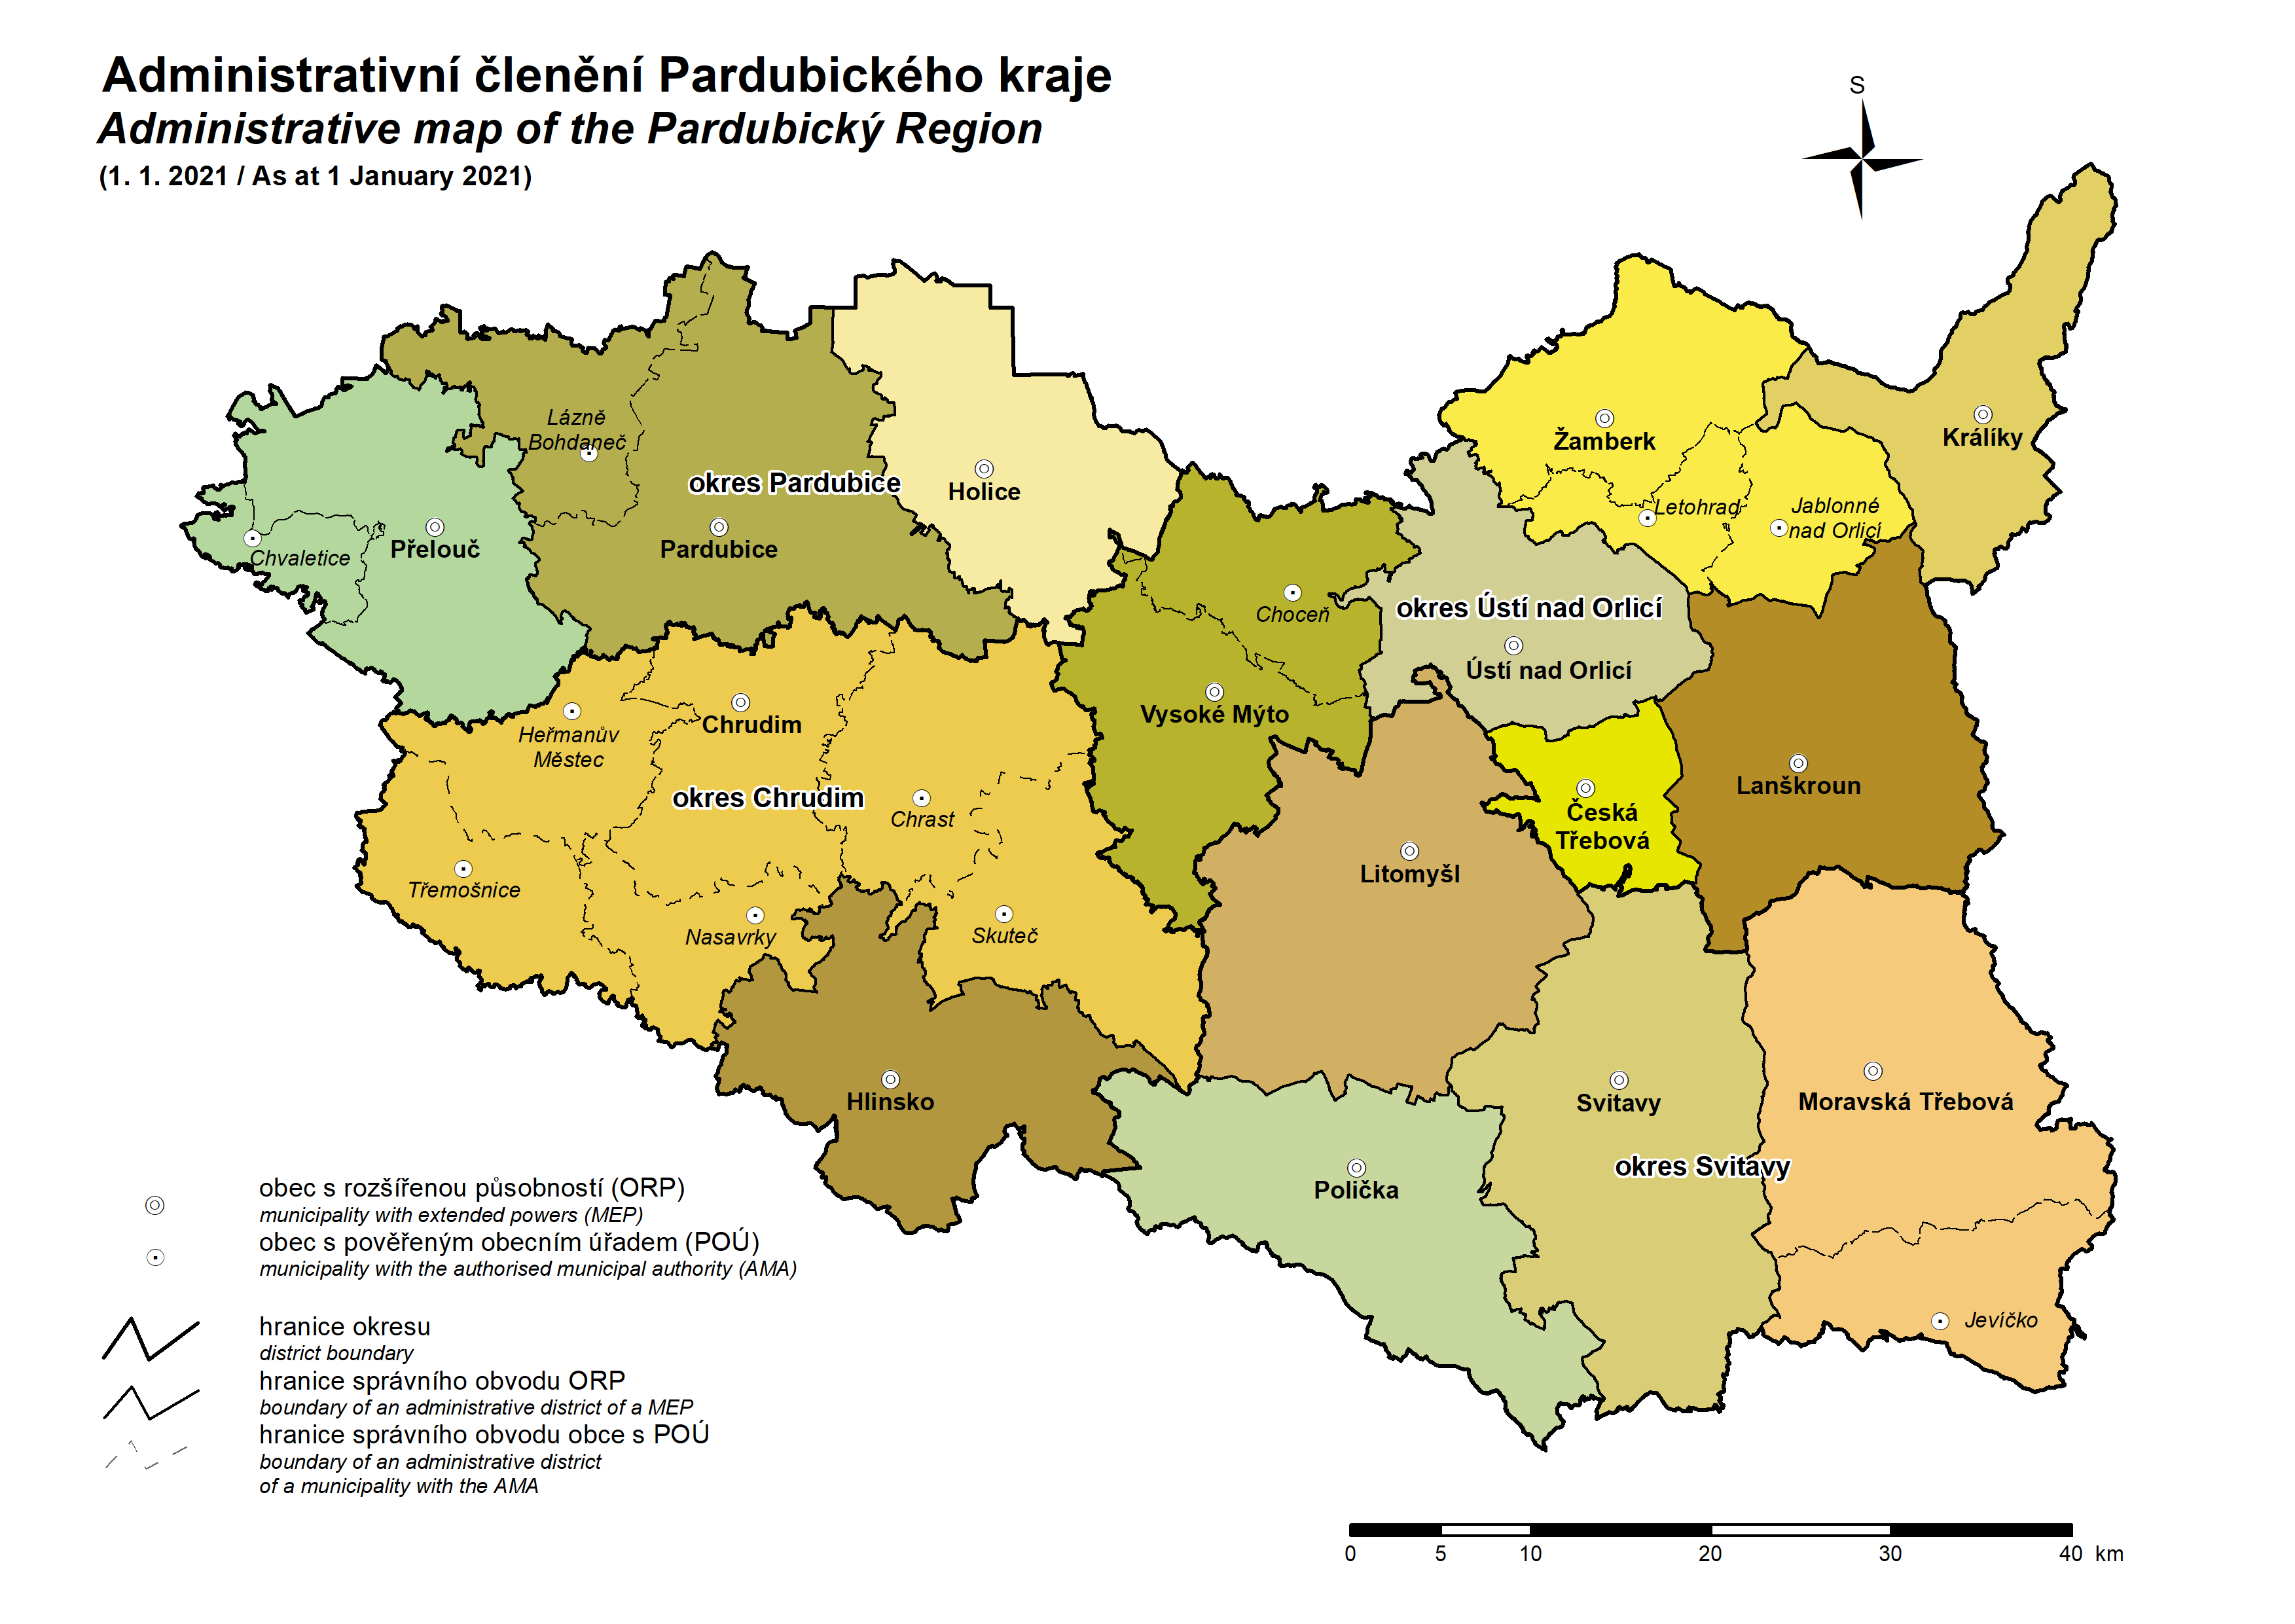 Zdroj: ČSÚ https://www.czso.cz/csu/xe/mapy_a_kartogramy